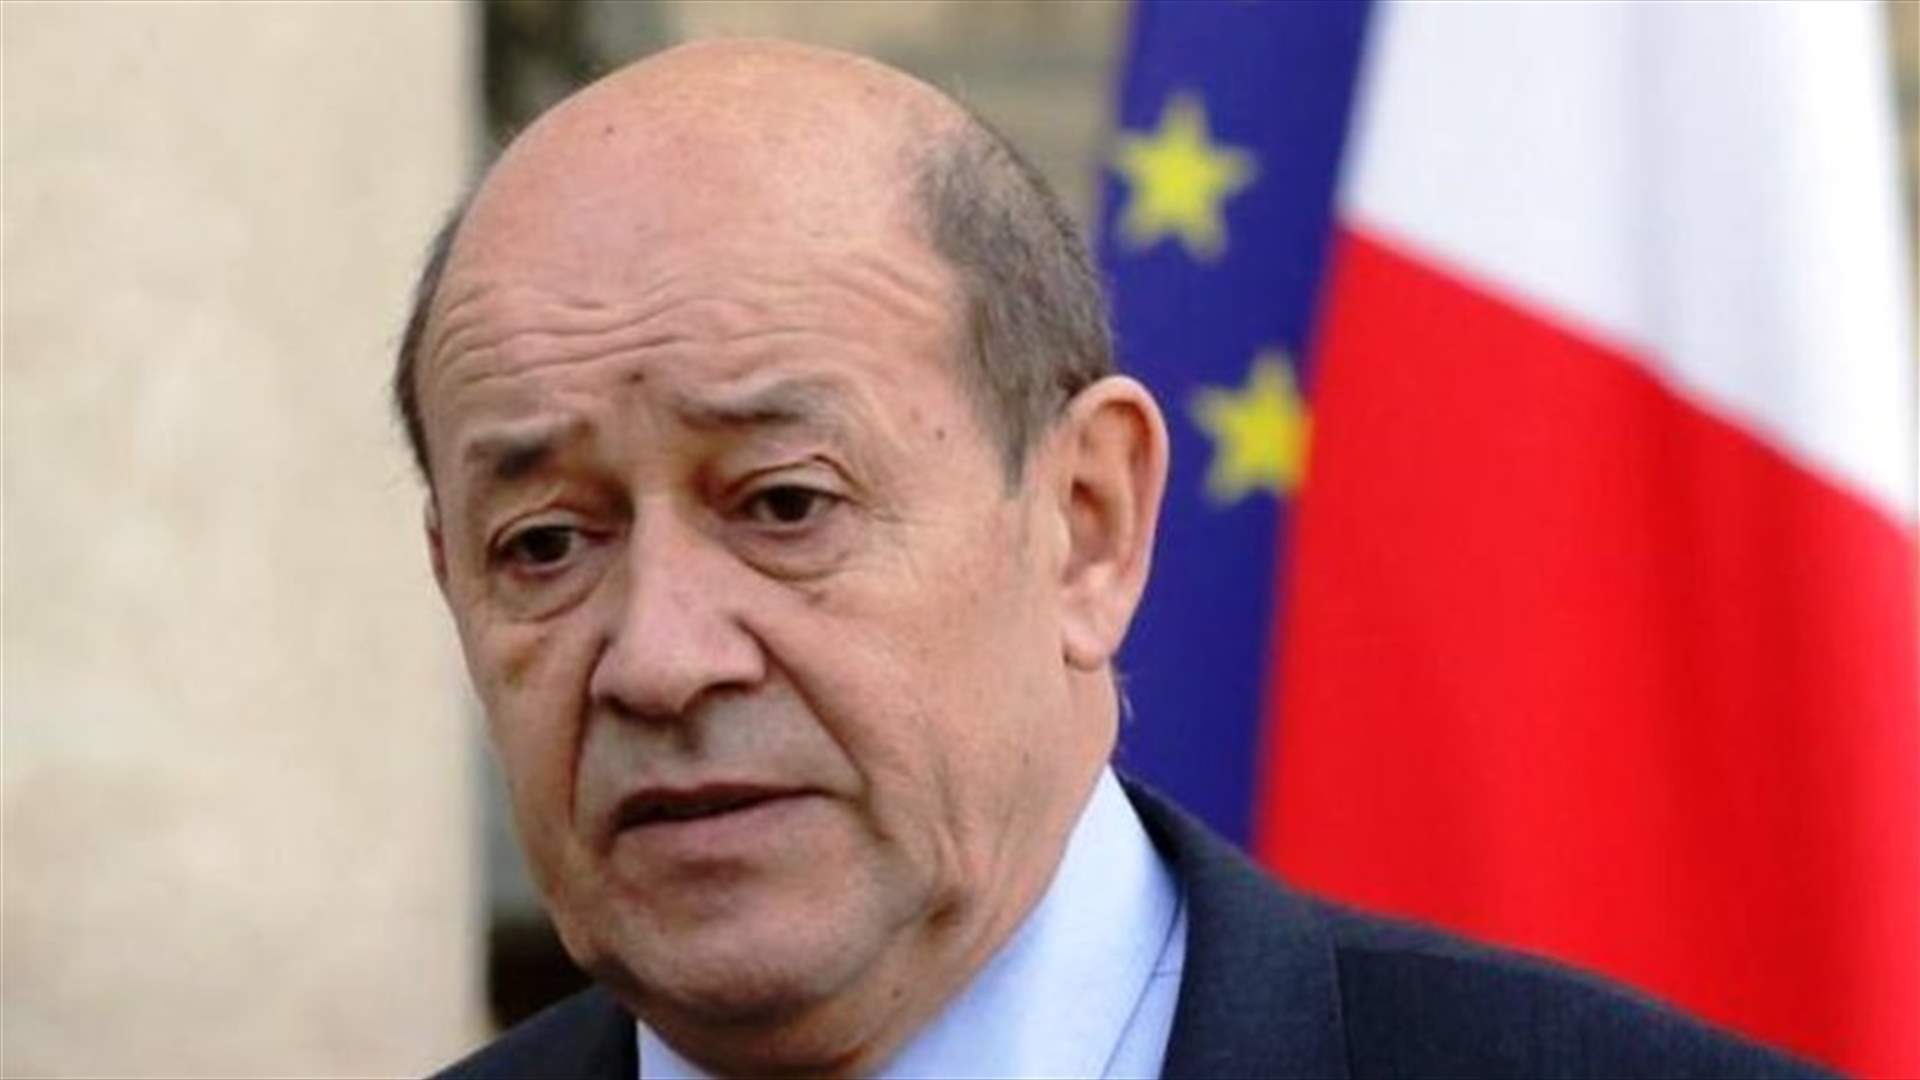 لودريان اتصل بوهبه: فرنسا تقف الى جانب اللبنانيين وسترسل مساعدات